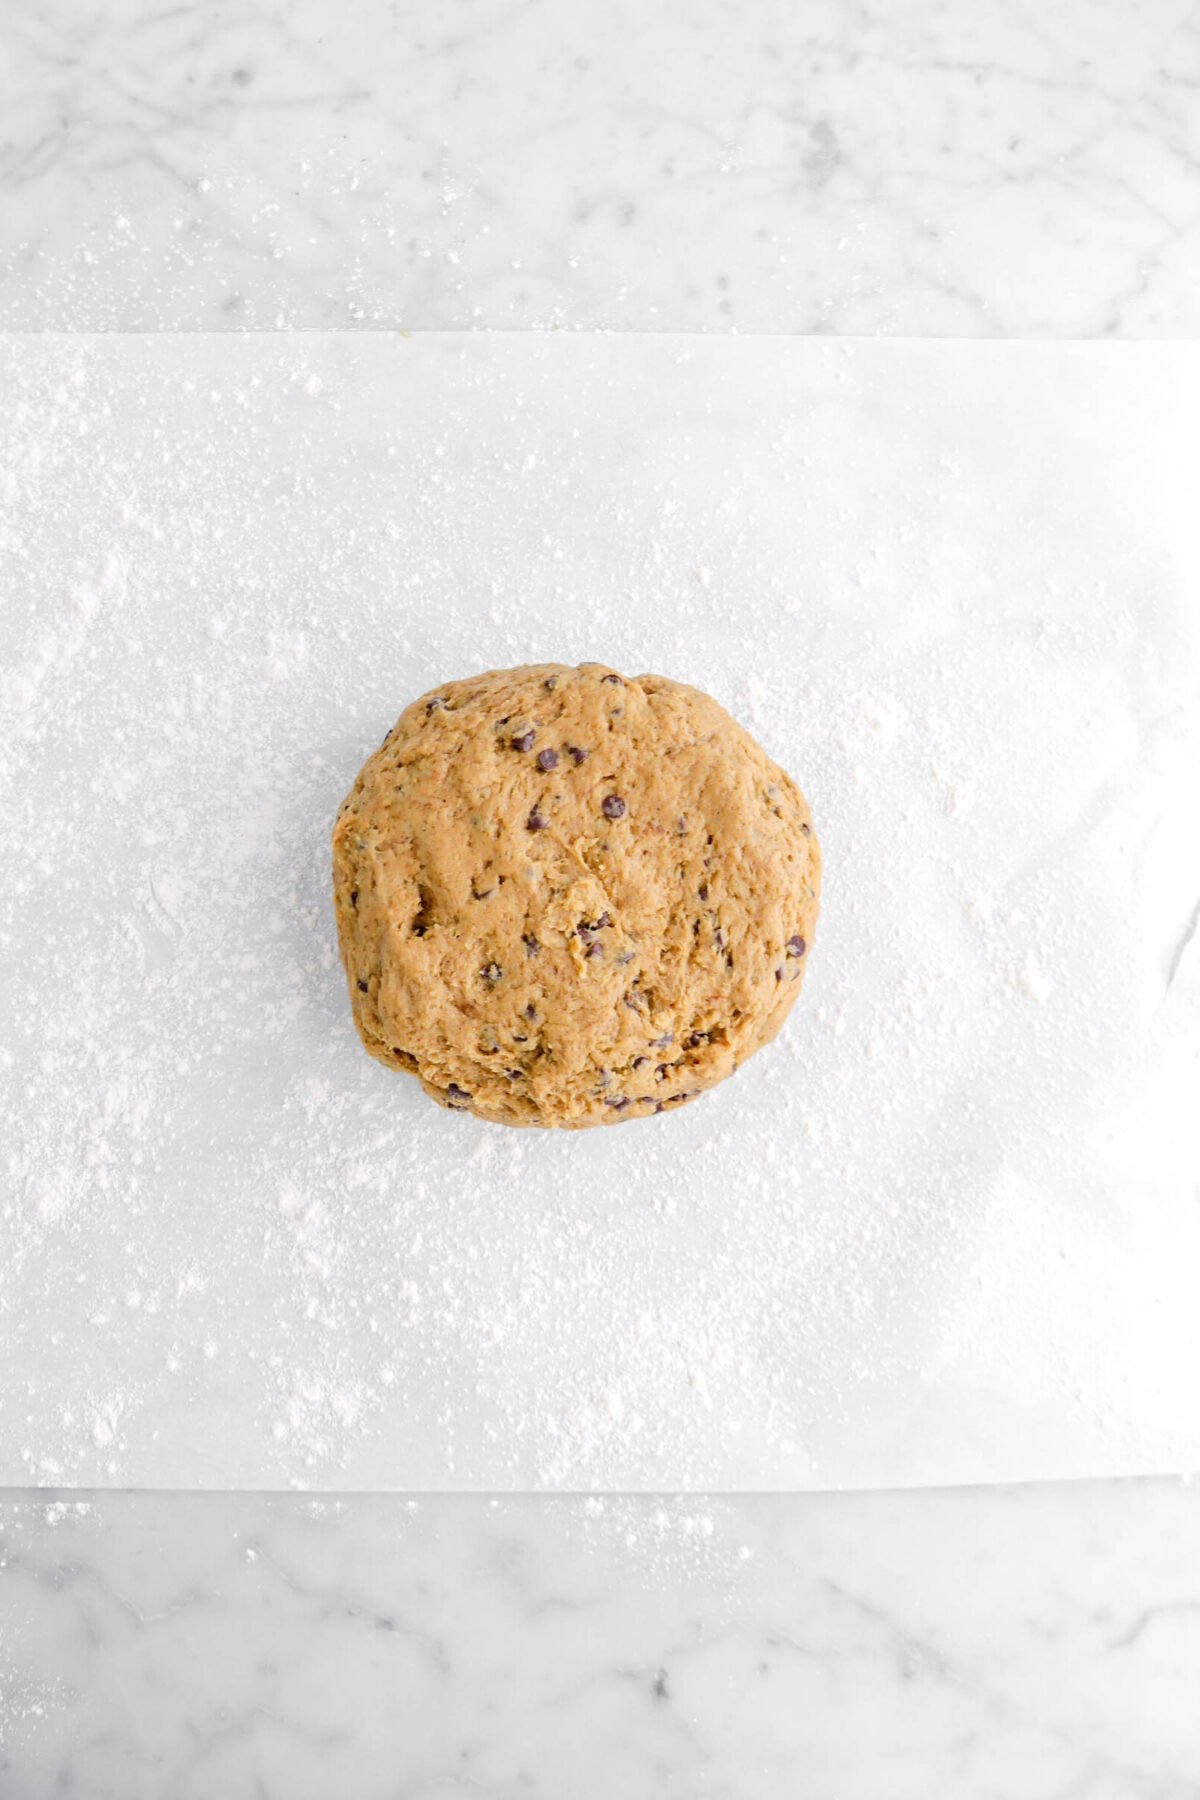 scone dough on floured parchment paper.